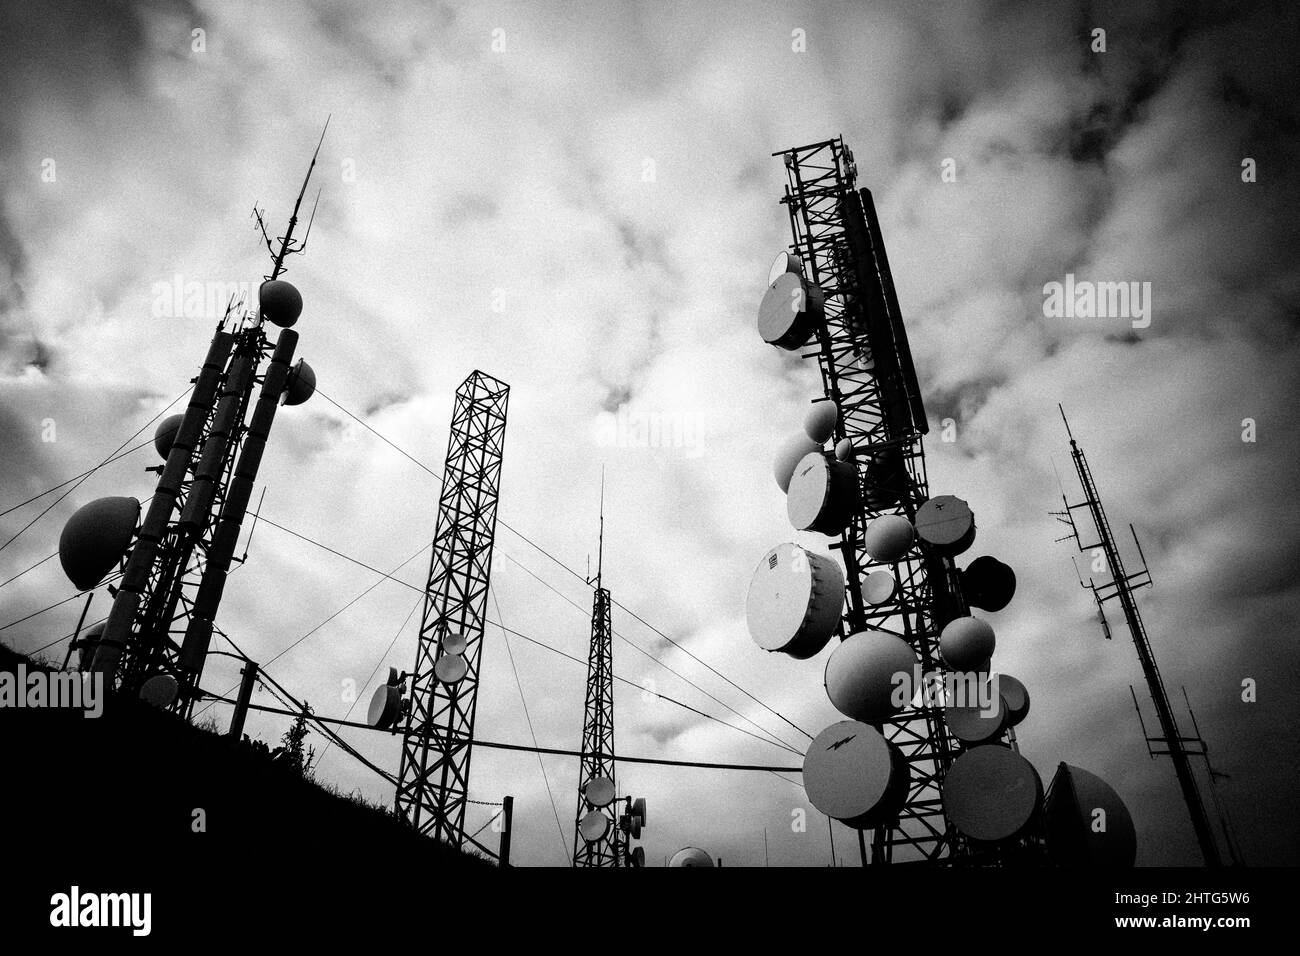 Vue de dessous en niveaux de gris des antennes radio en arrière-plan des nuages. Banque D'Images